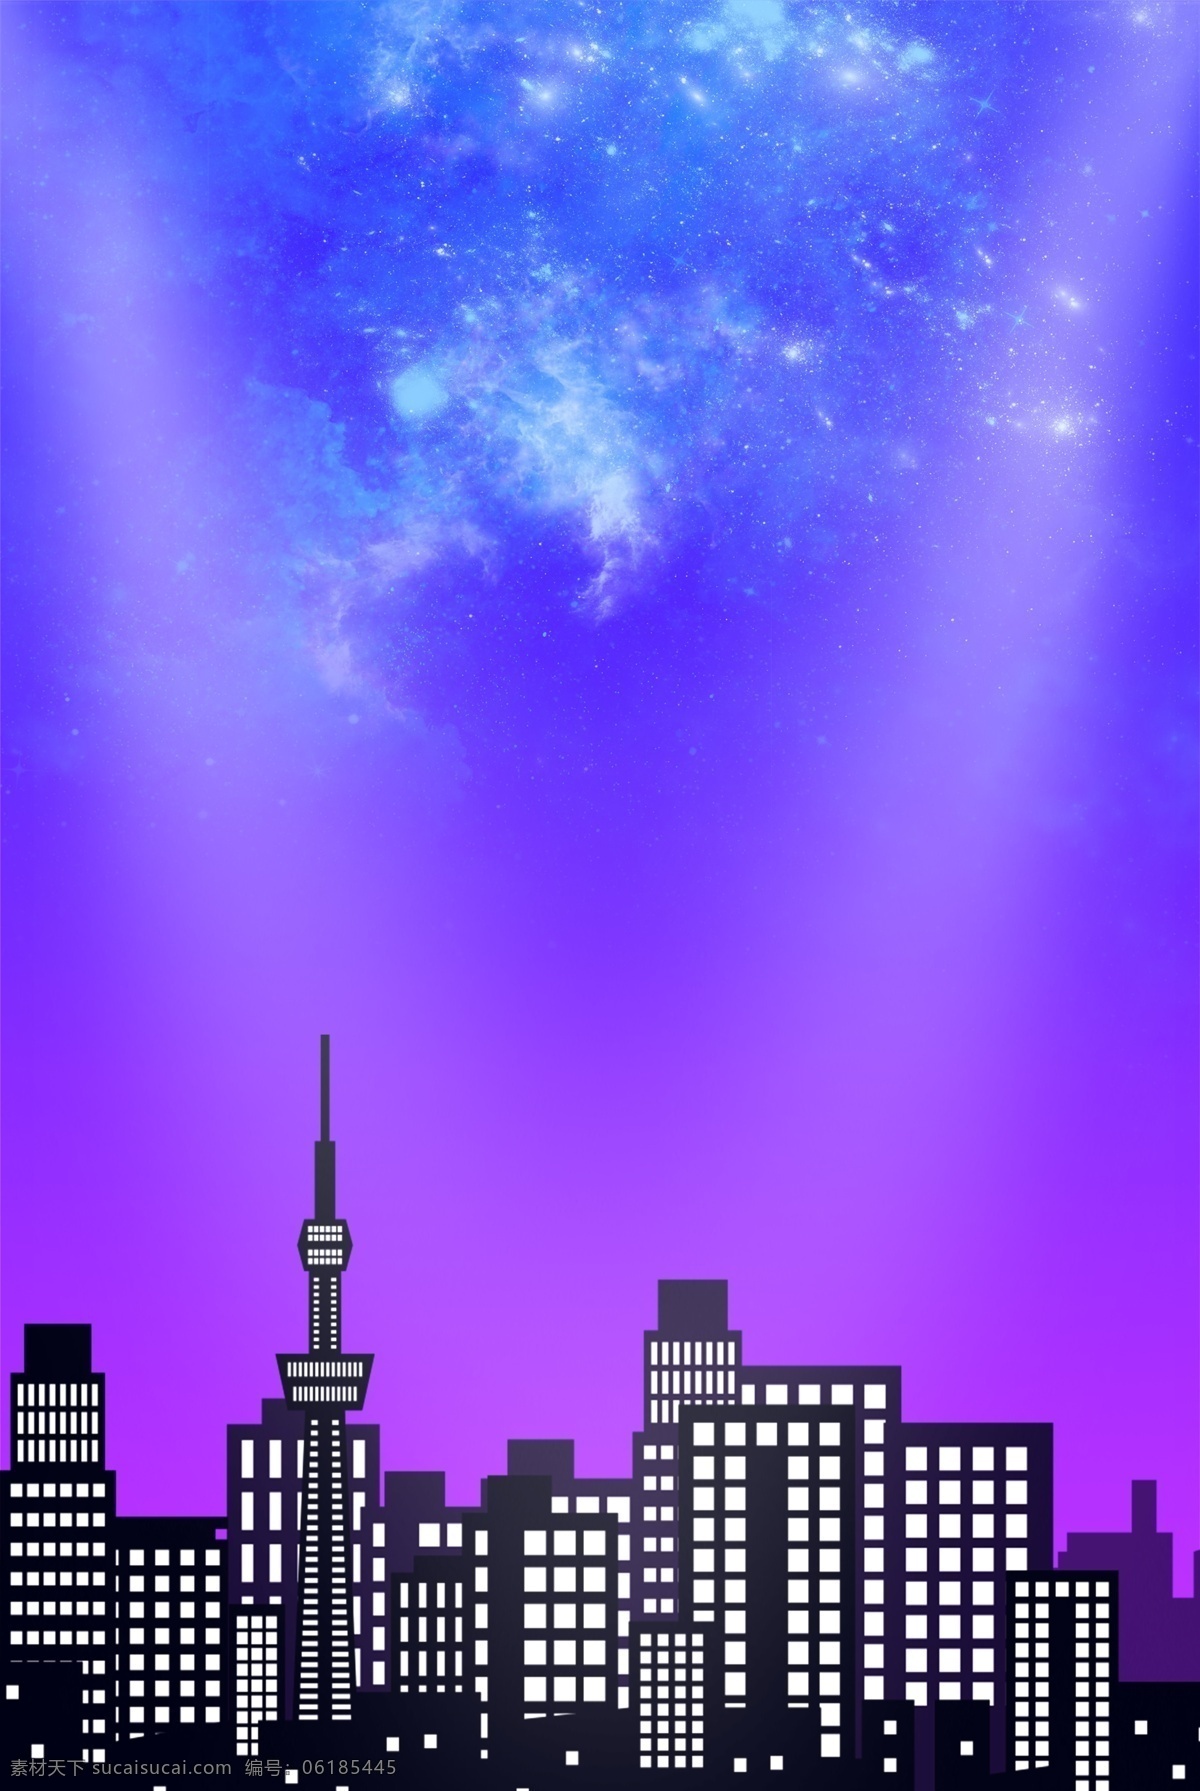 梦幻 星空 城市 海报 背景 未来 电商 房地产 大都市 智慧城市 i梦幻 科技感 炫酷